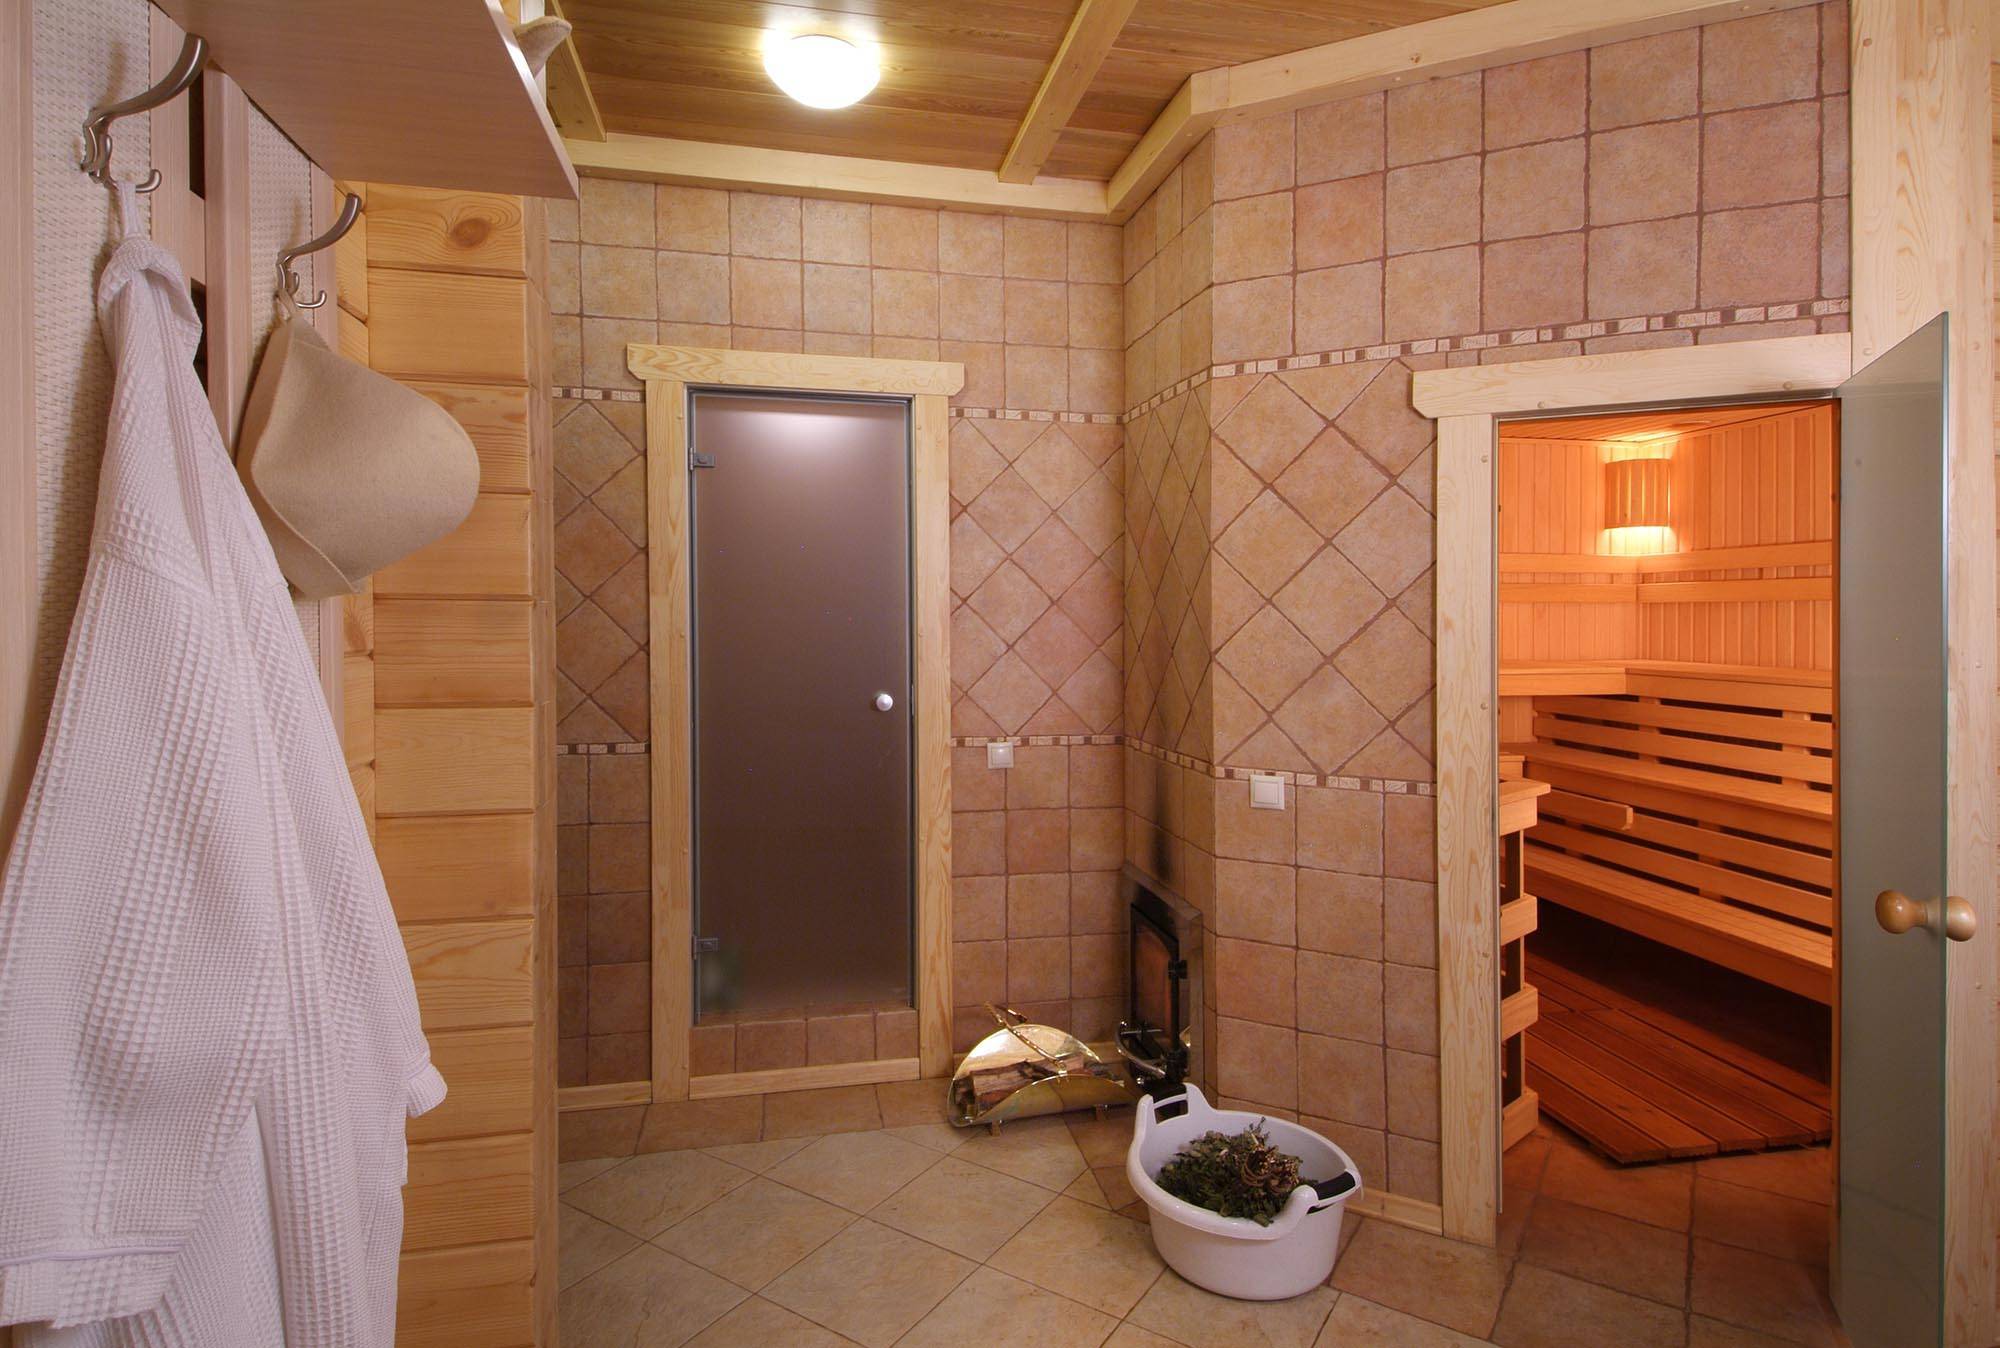 Фото помывочной в бане - примеры отделки и планировки помывочной